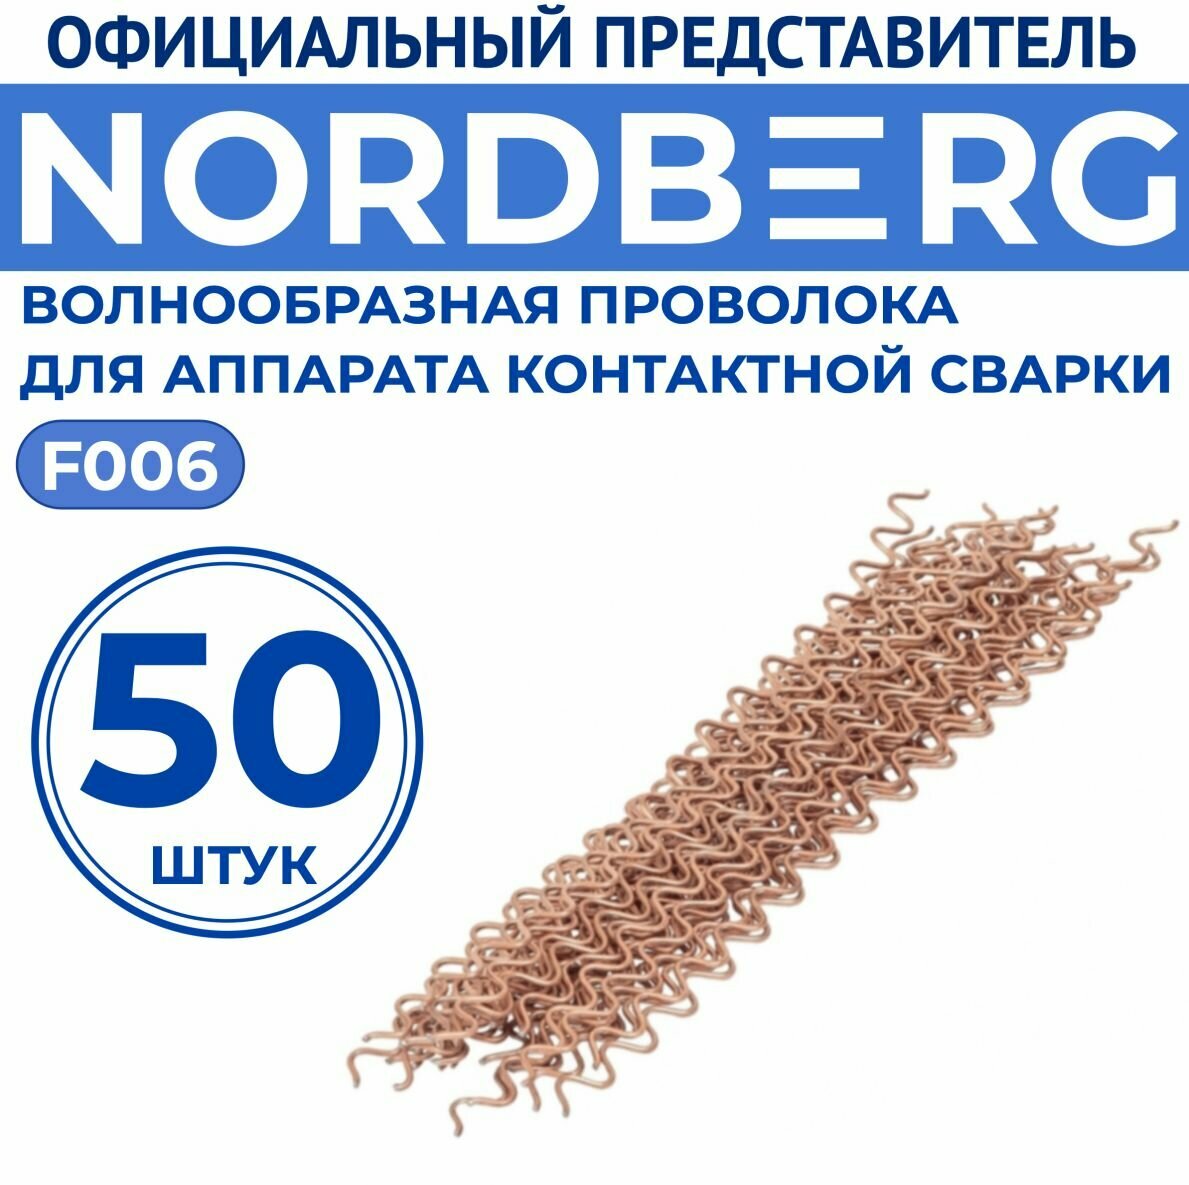 Волнообразная проволока для аппарата контактной сварки (50 шт.) NORDBERG F006